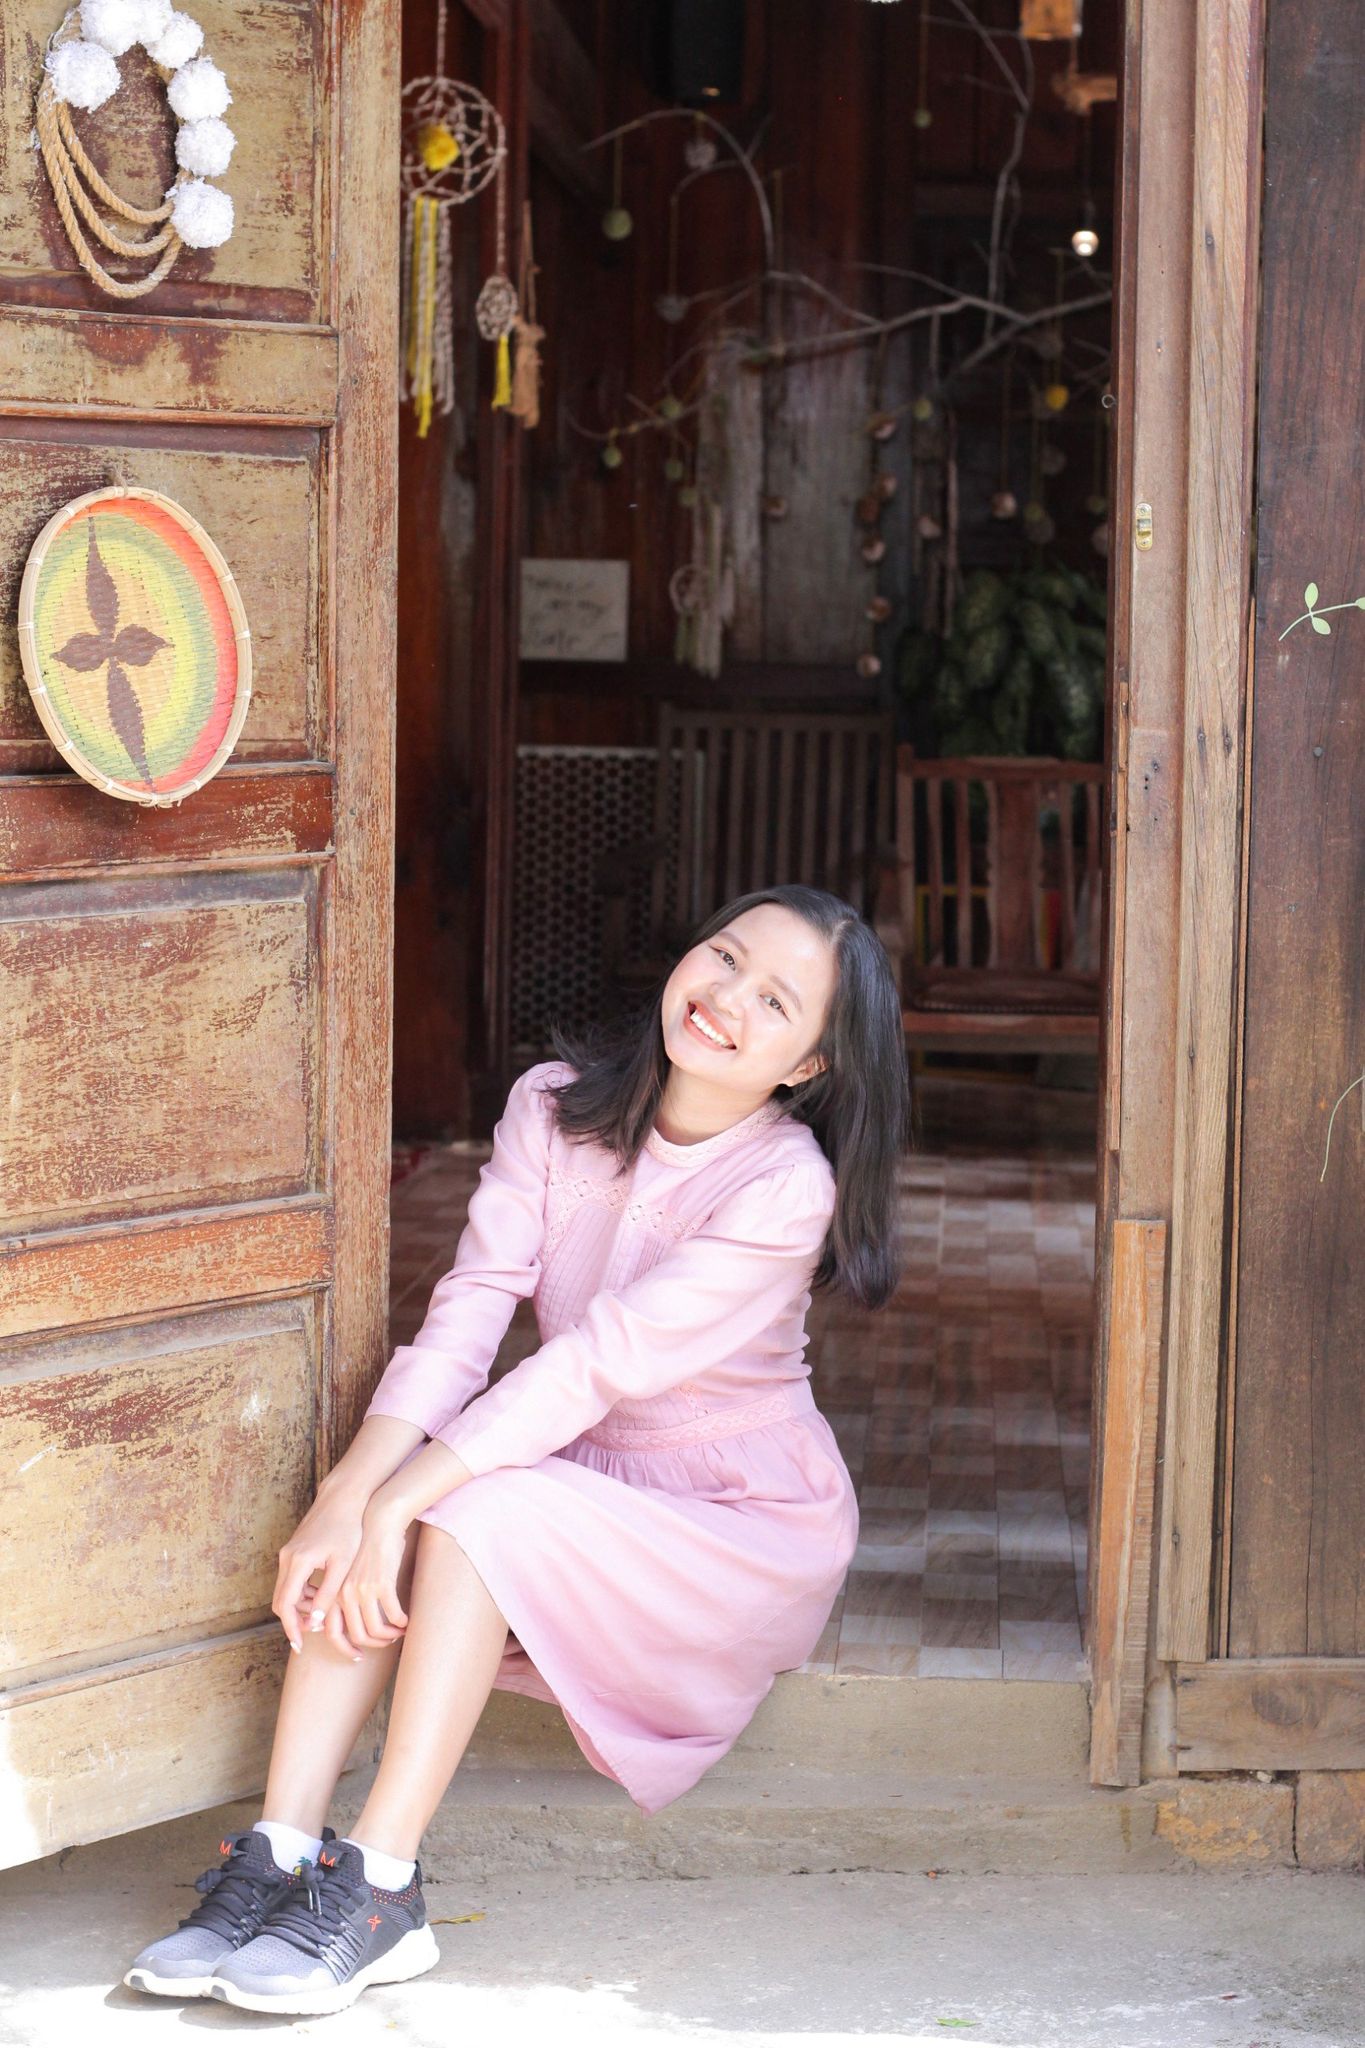 Nhân vật chia sẻ: Thị Kim Huệ; Nghề nghiệp: Freelancer Content, training thiết kế Canva, blogger tại fanpage “Con gái Má”